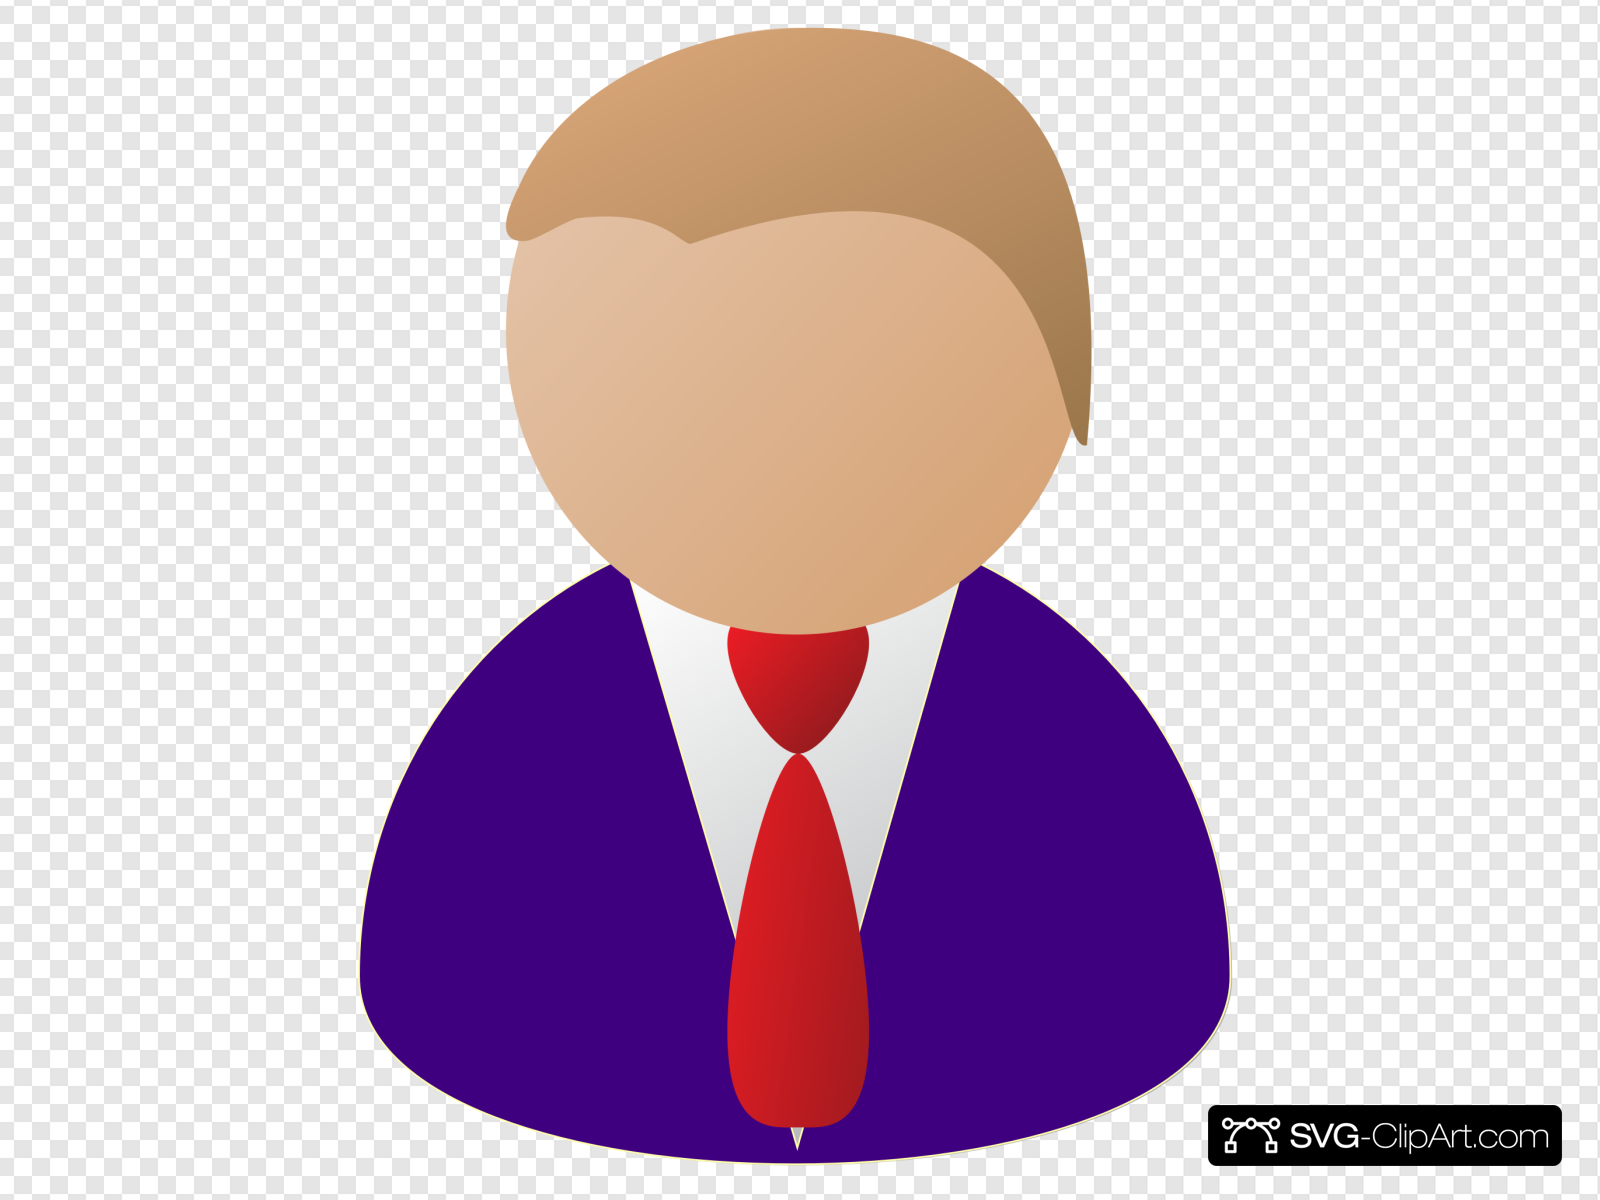 Person Icon Purple Clip art, Icon and SVG.